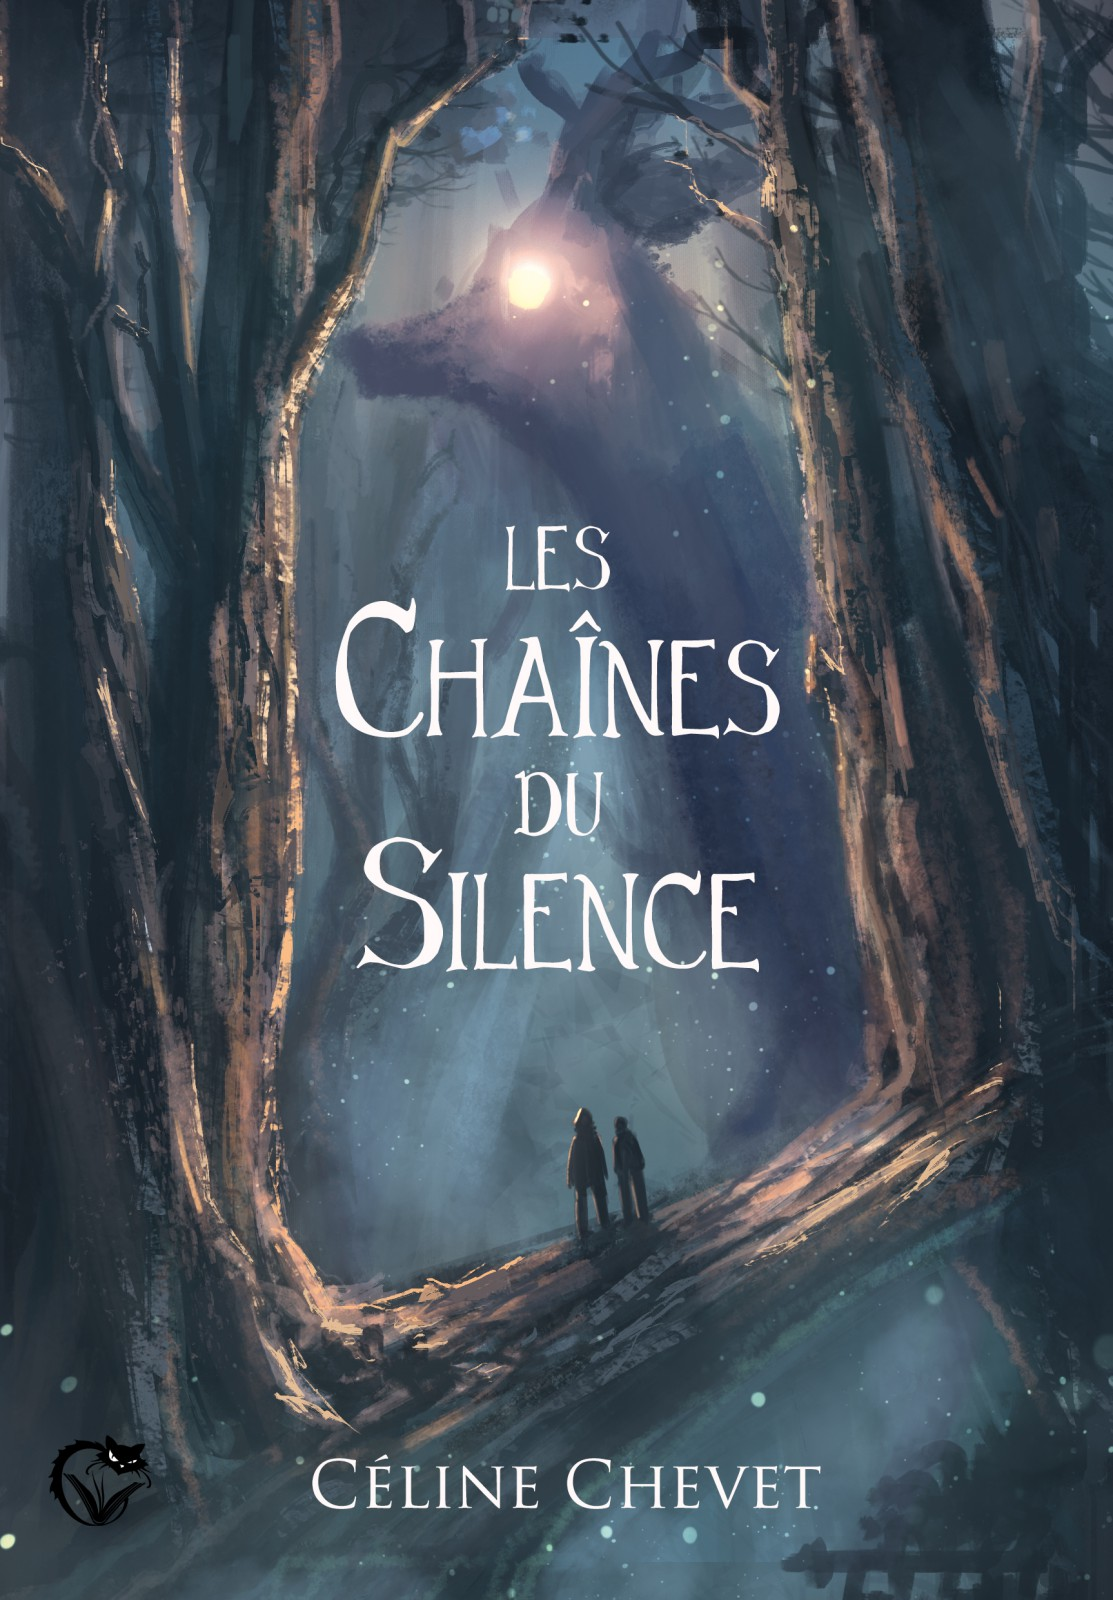 Afficher "Les Chaînes du Silence"